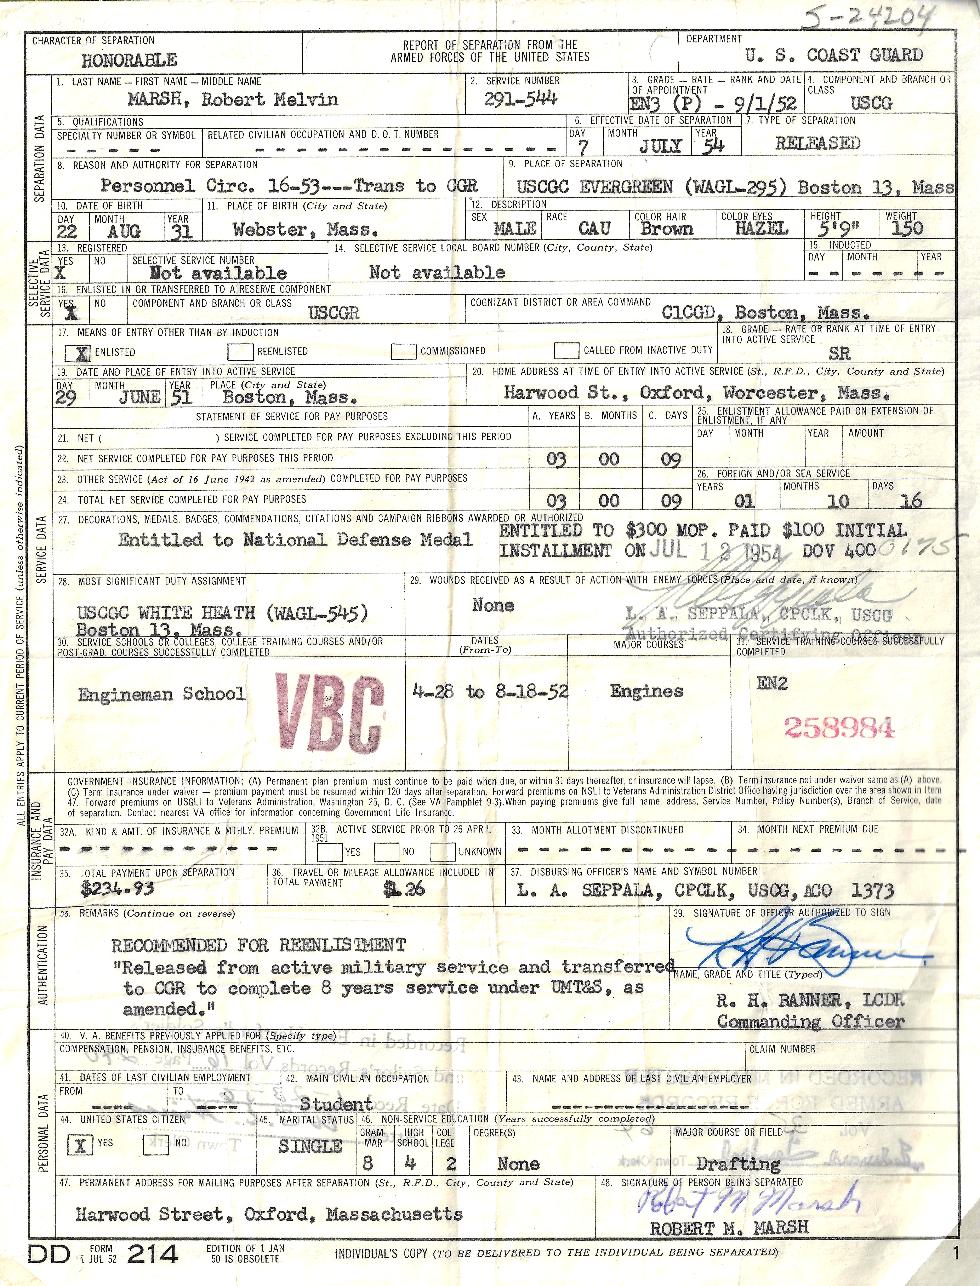 Robert Marsh US Coast Guard Discharge Papers